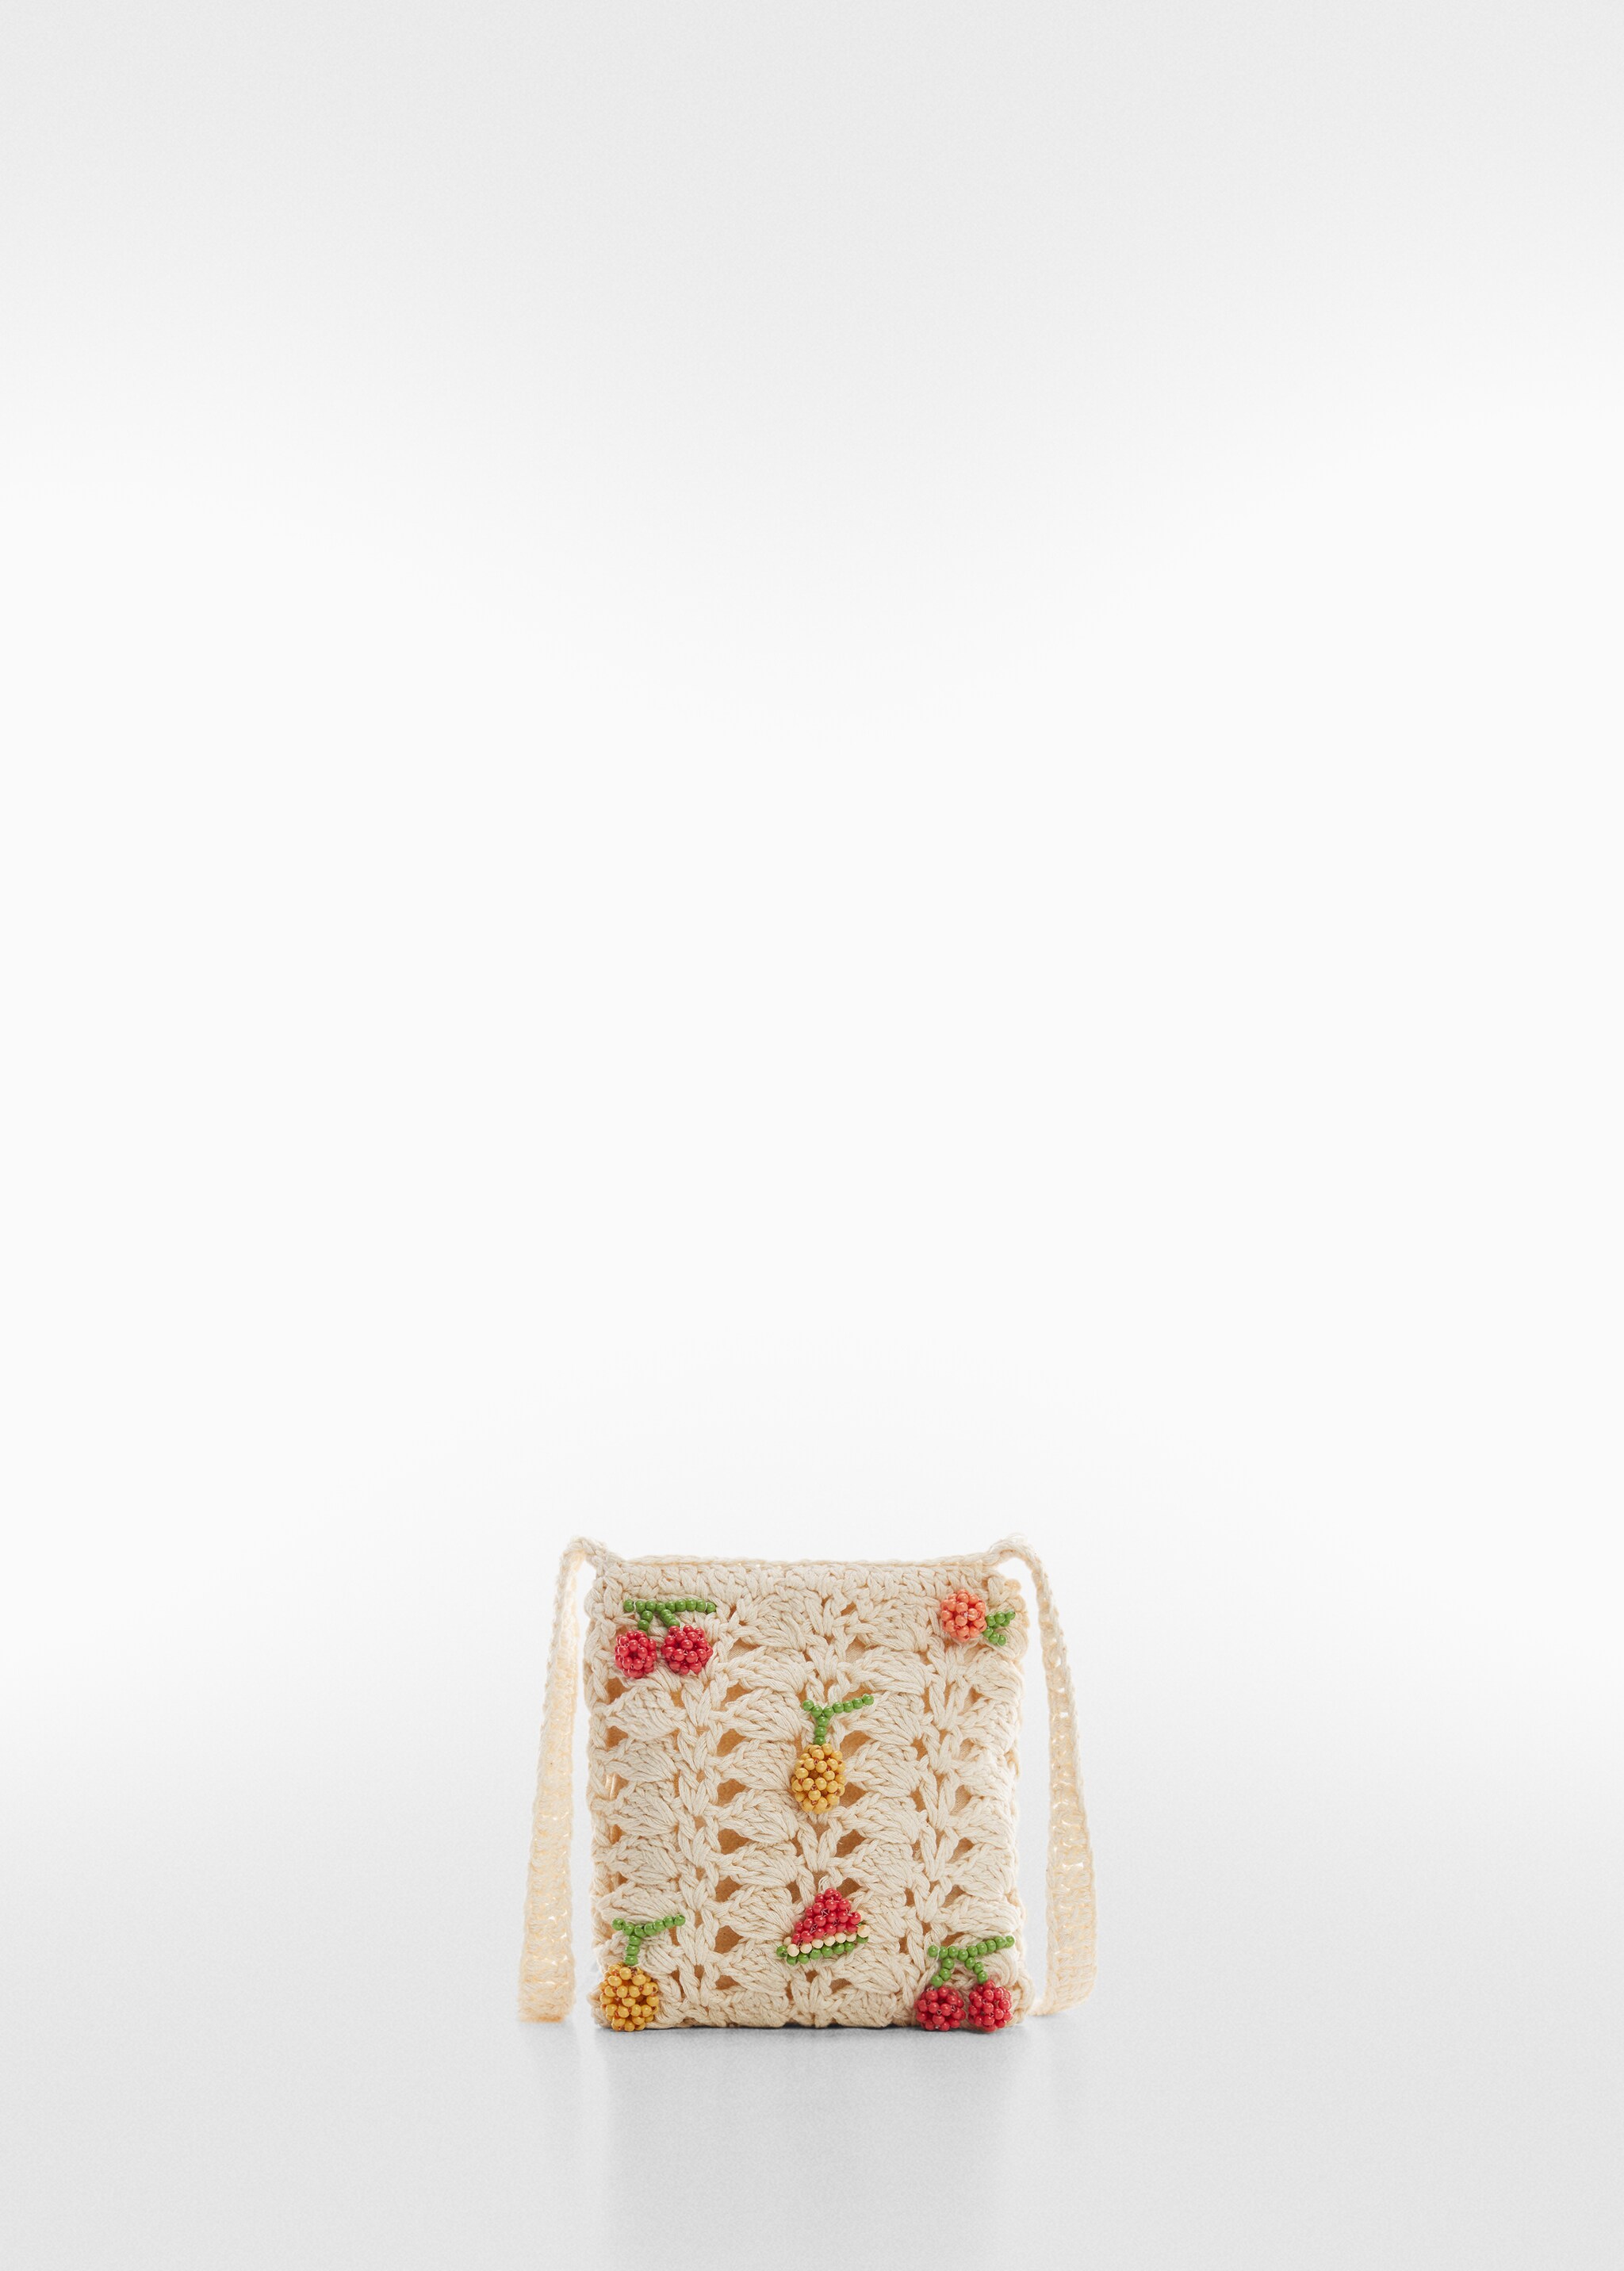 Mini sac crochet - Article sans modèle